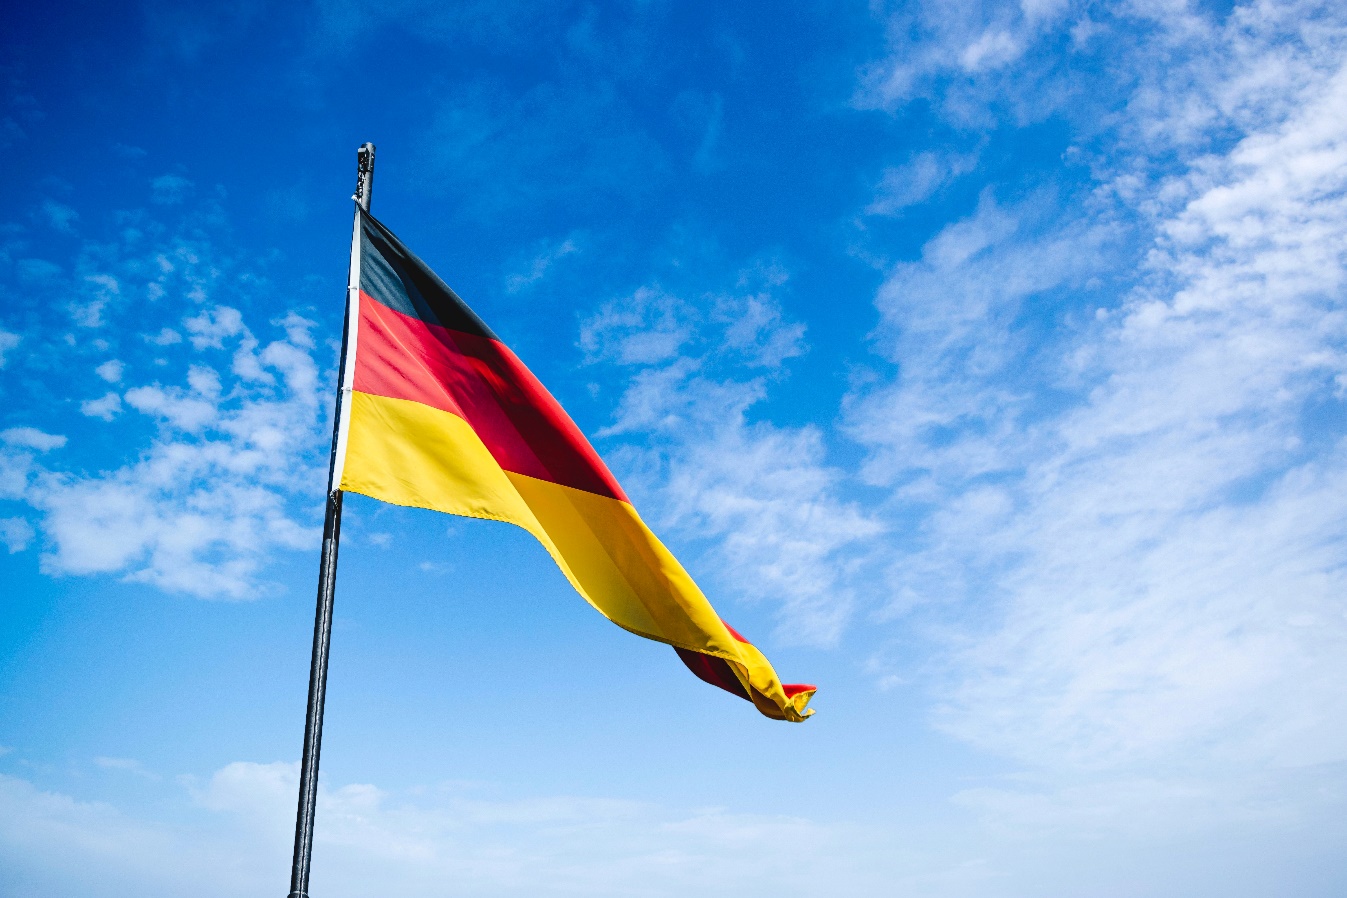 Turismo en Alemania bandera Alemana